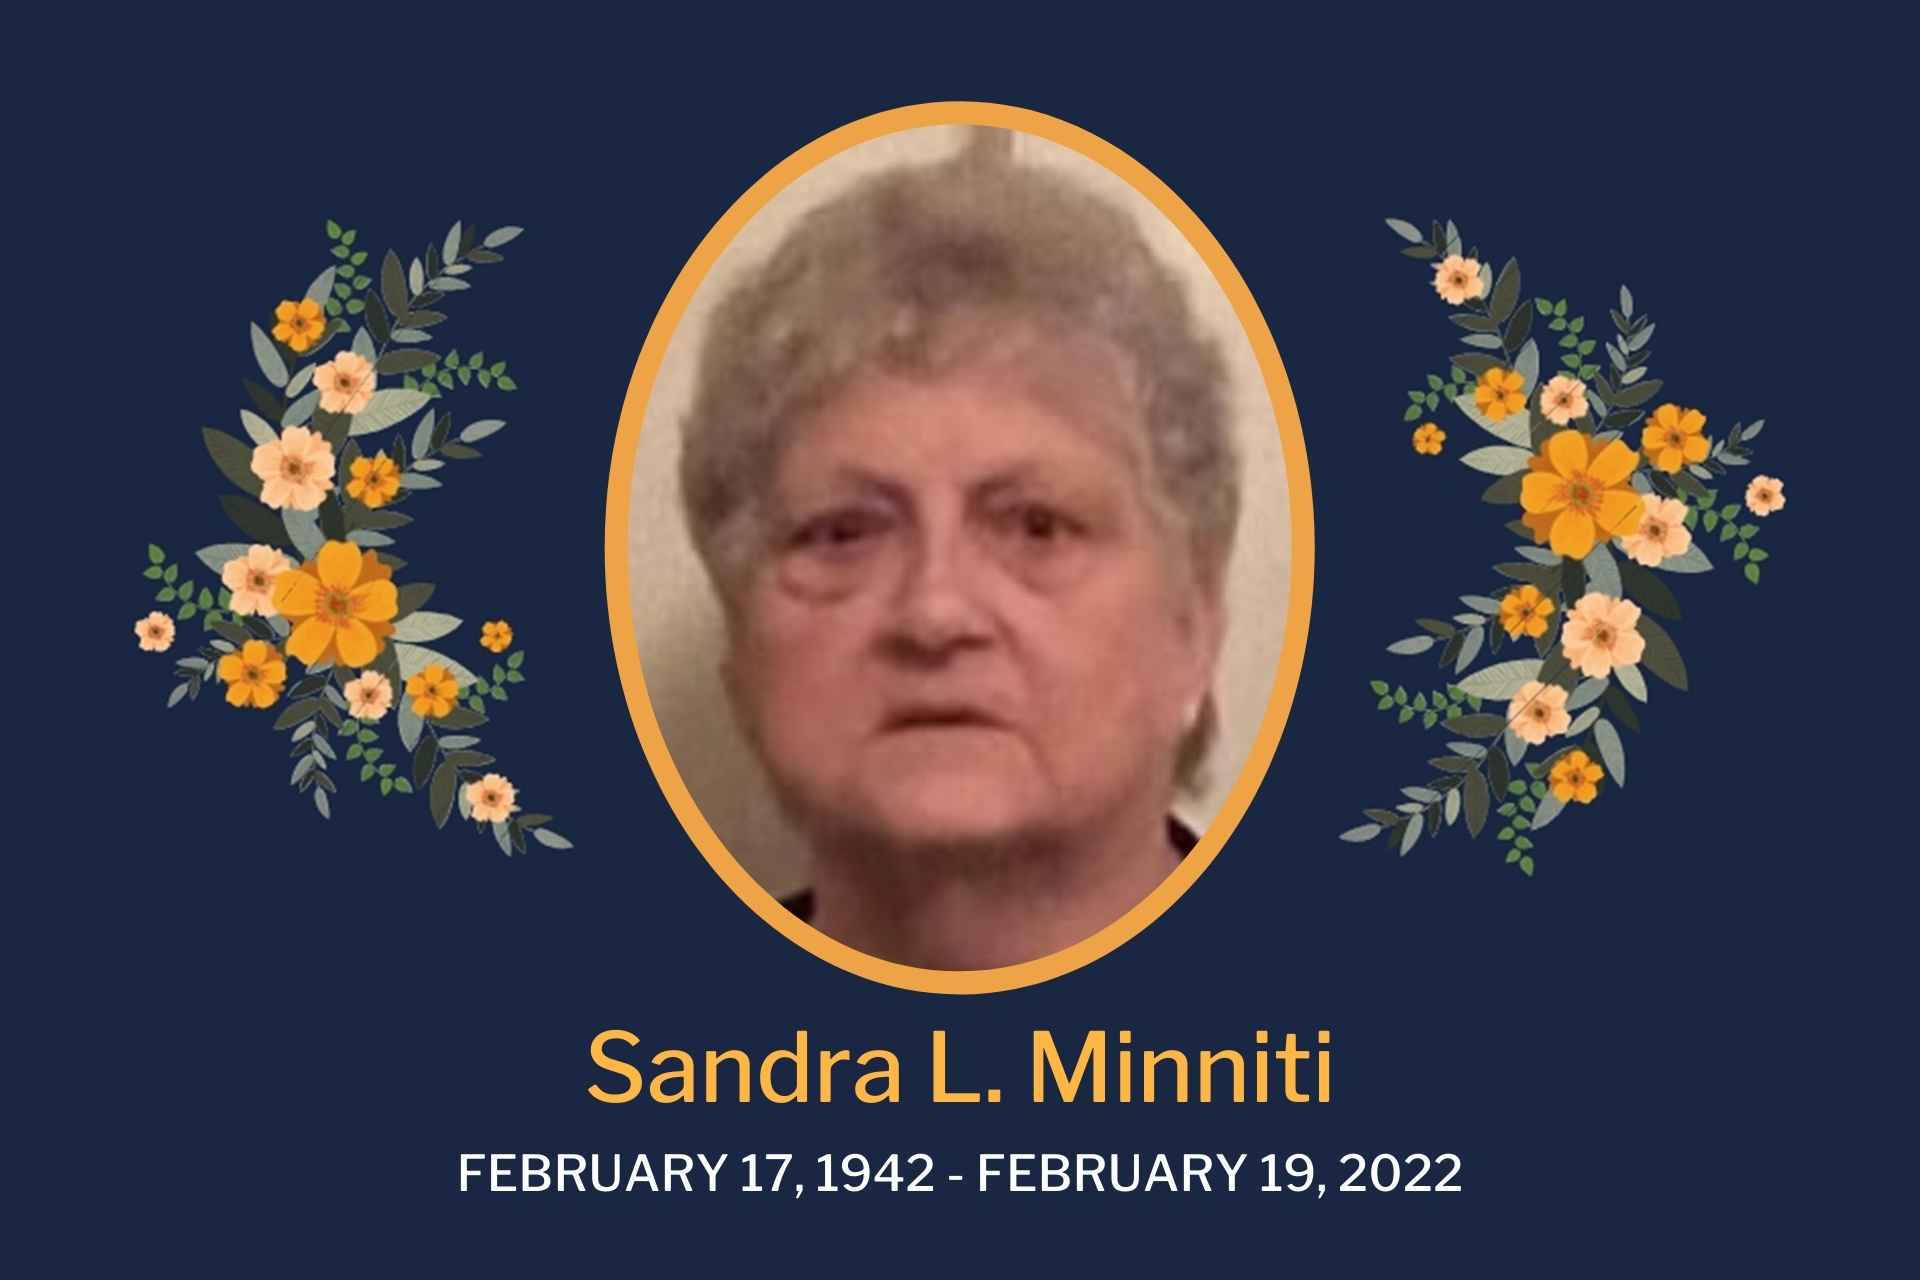 Obituary Sandra Minnniti